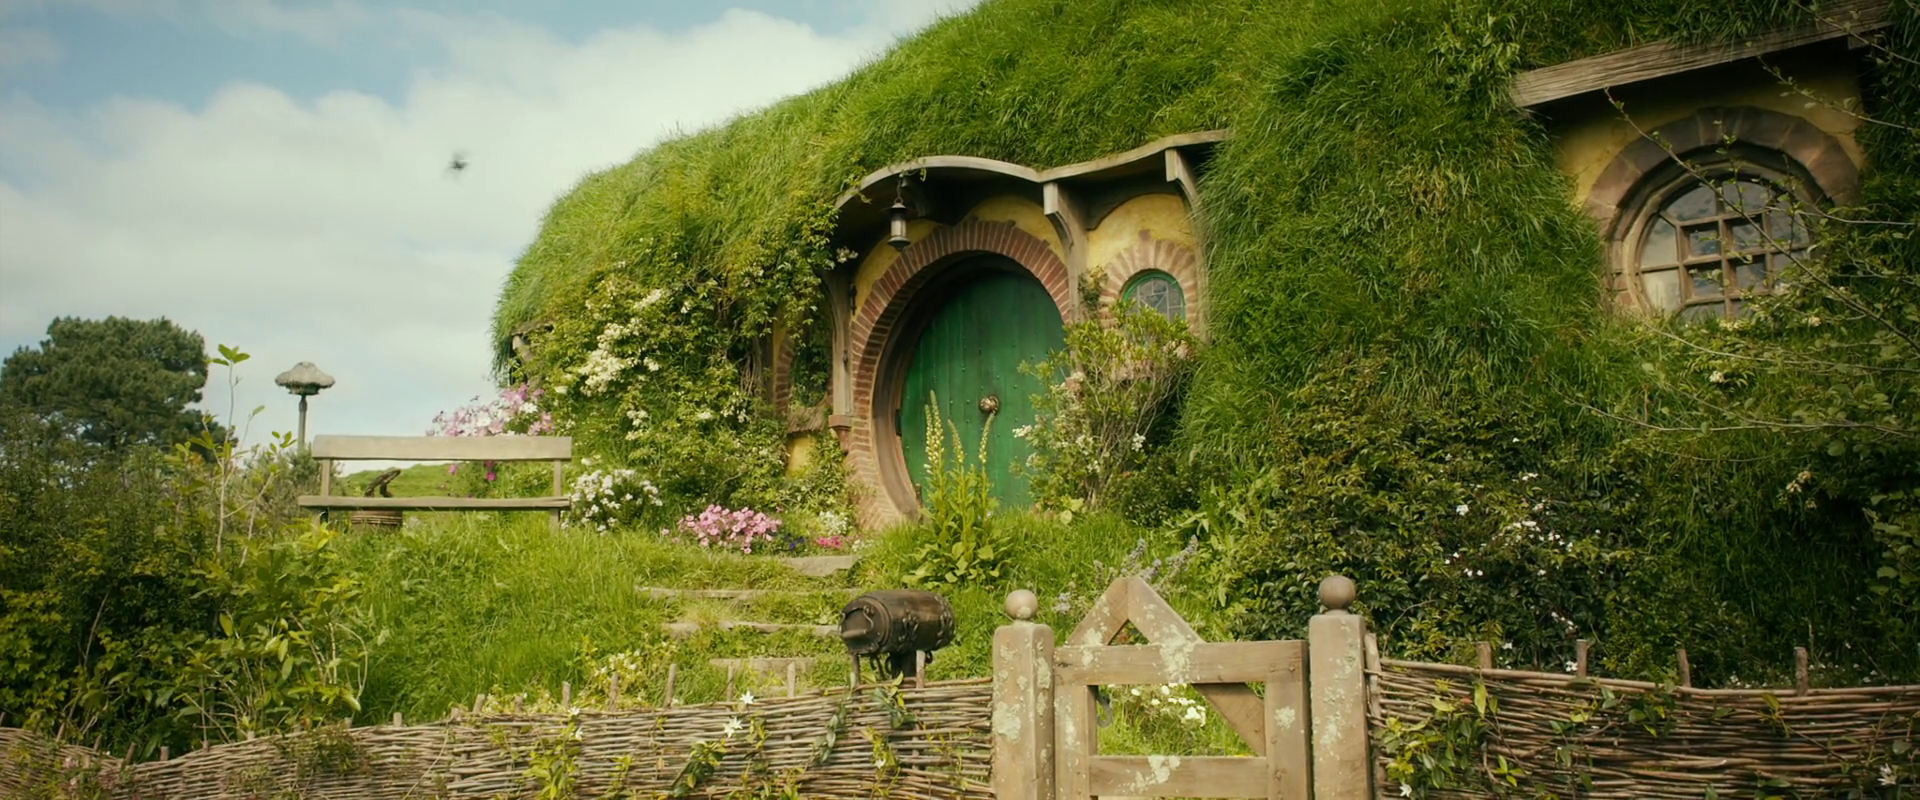 Peter Jackson transforma porão em toca Hobbit